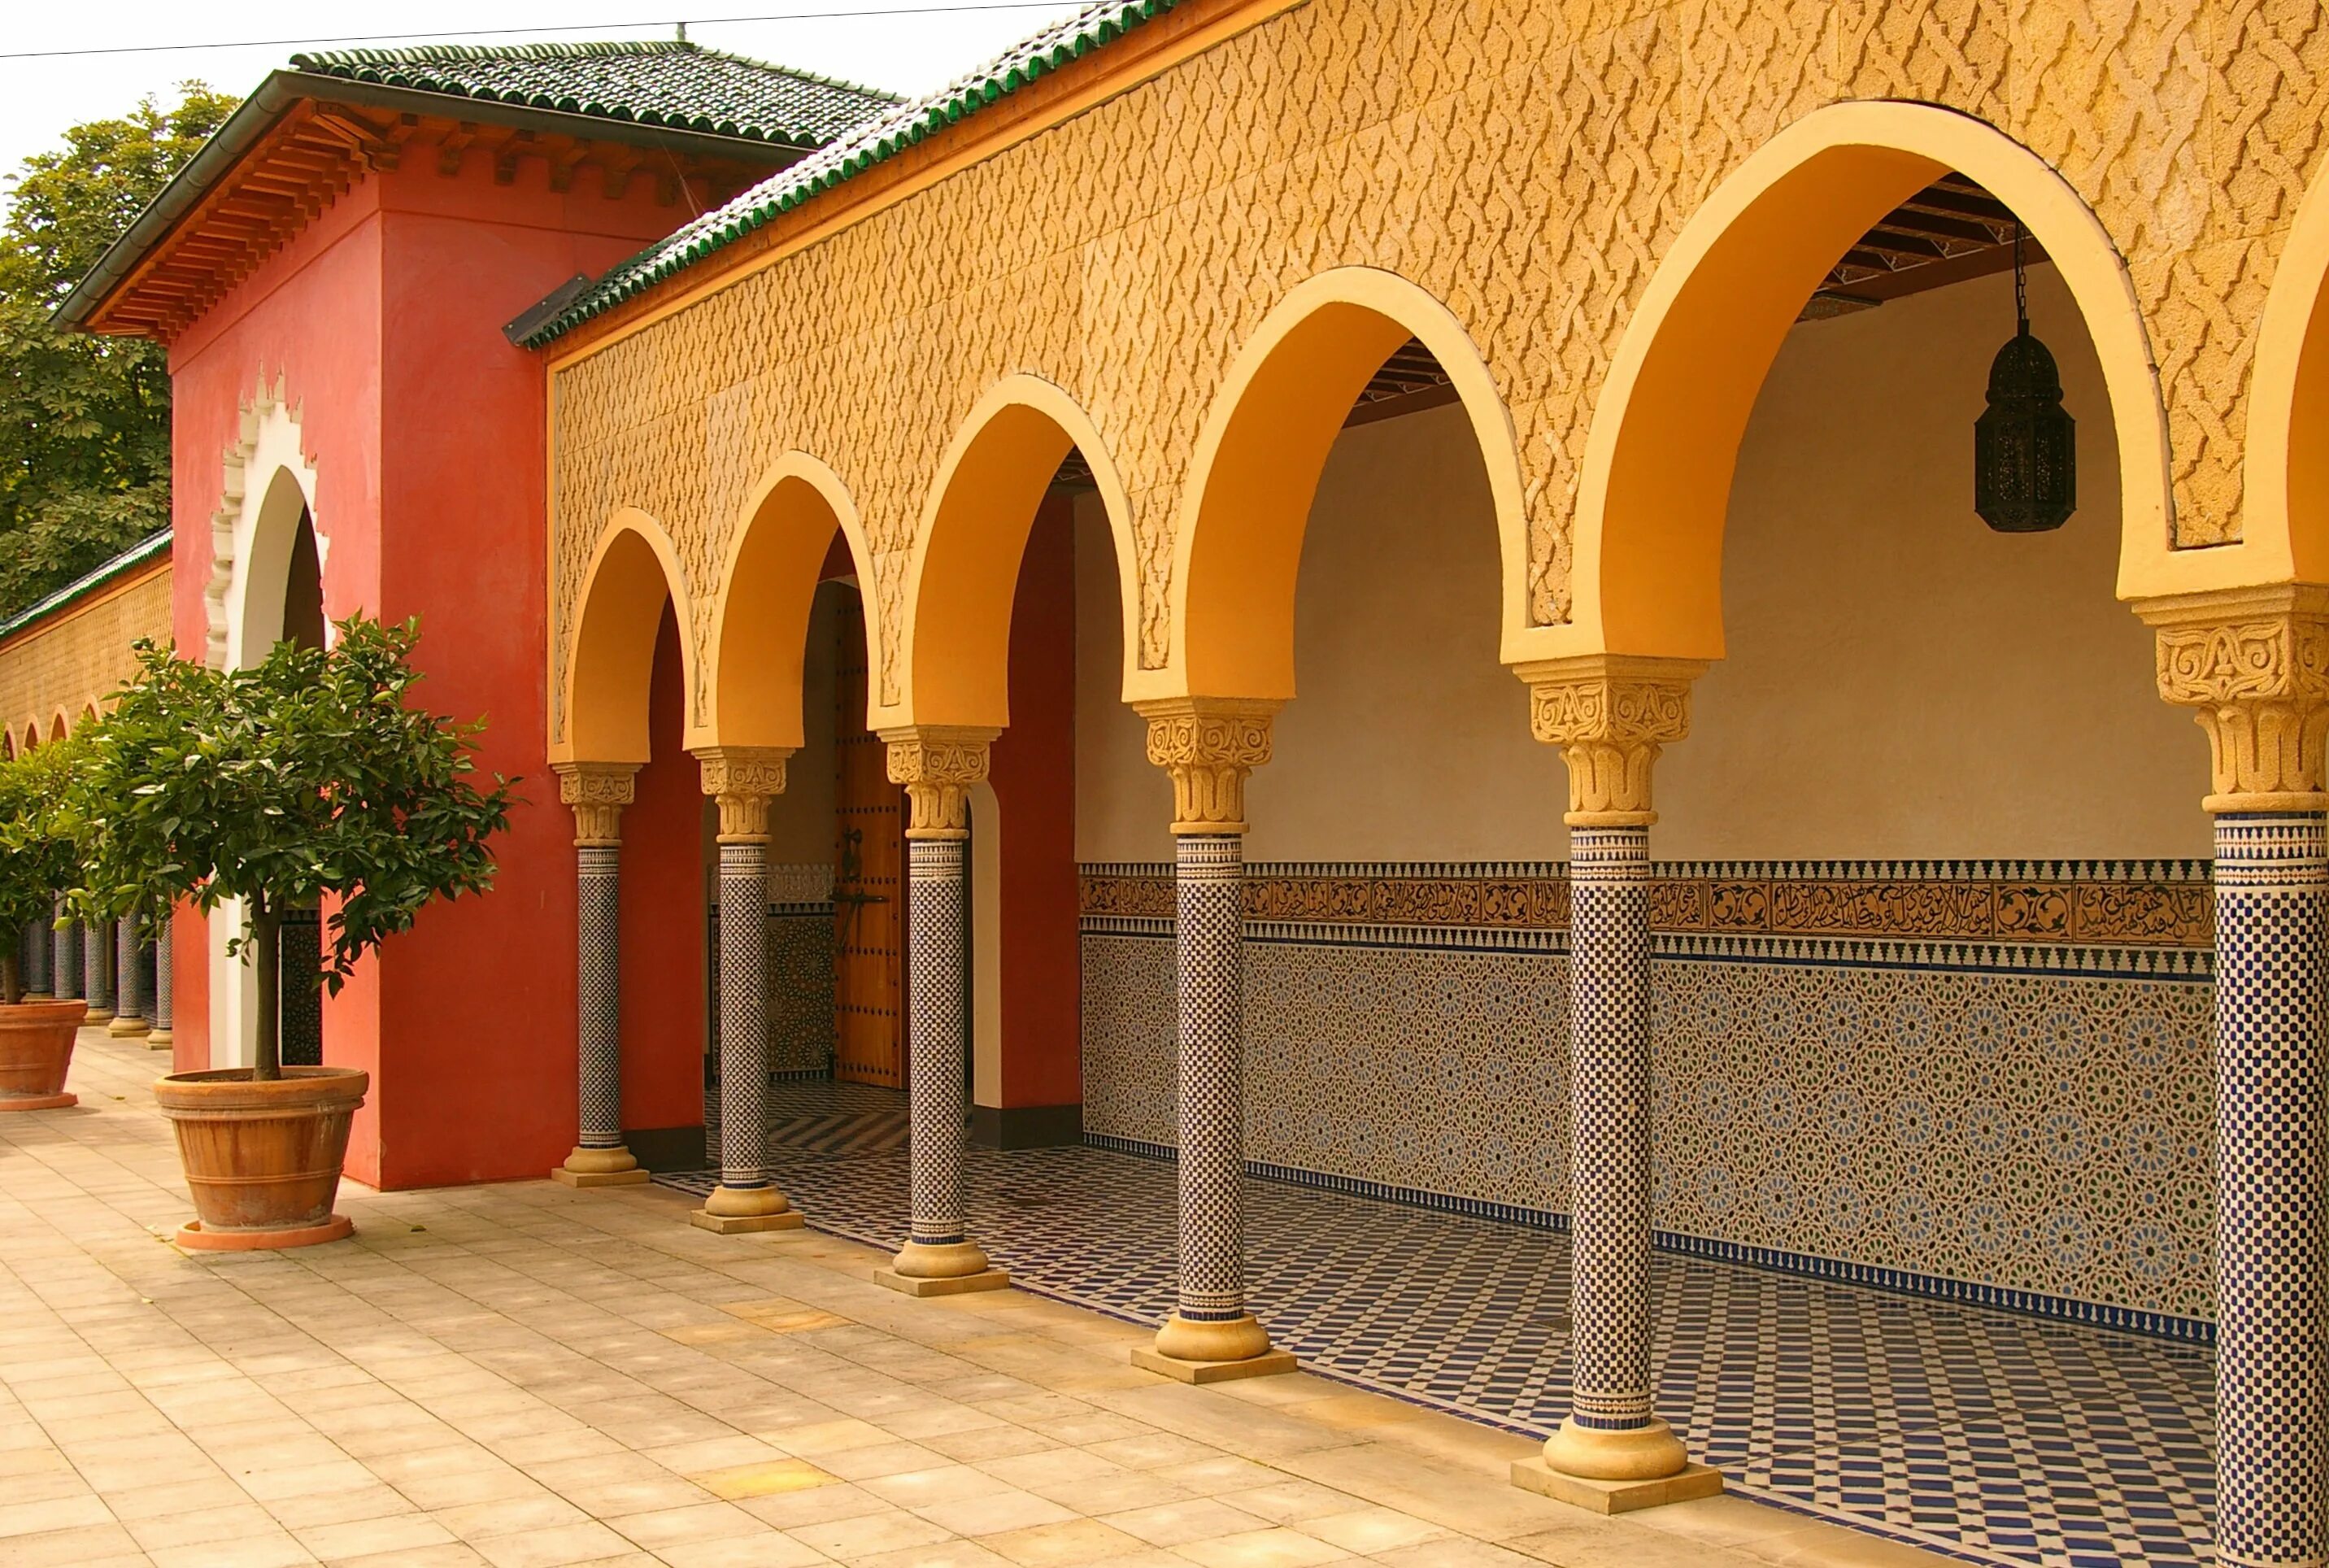 Мавританская архитектура Марокко. Марокко мавританские арки архитектура. Мавританский стиль в архитектуре Марокко. Здания в мавританском стиле в Марокко.